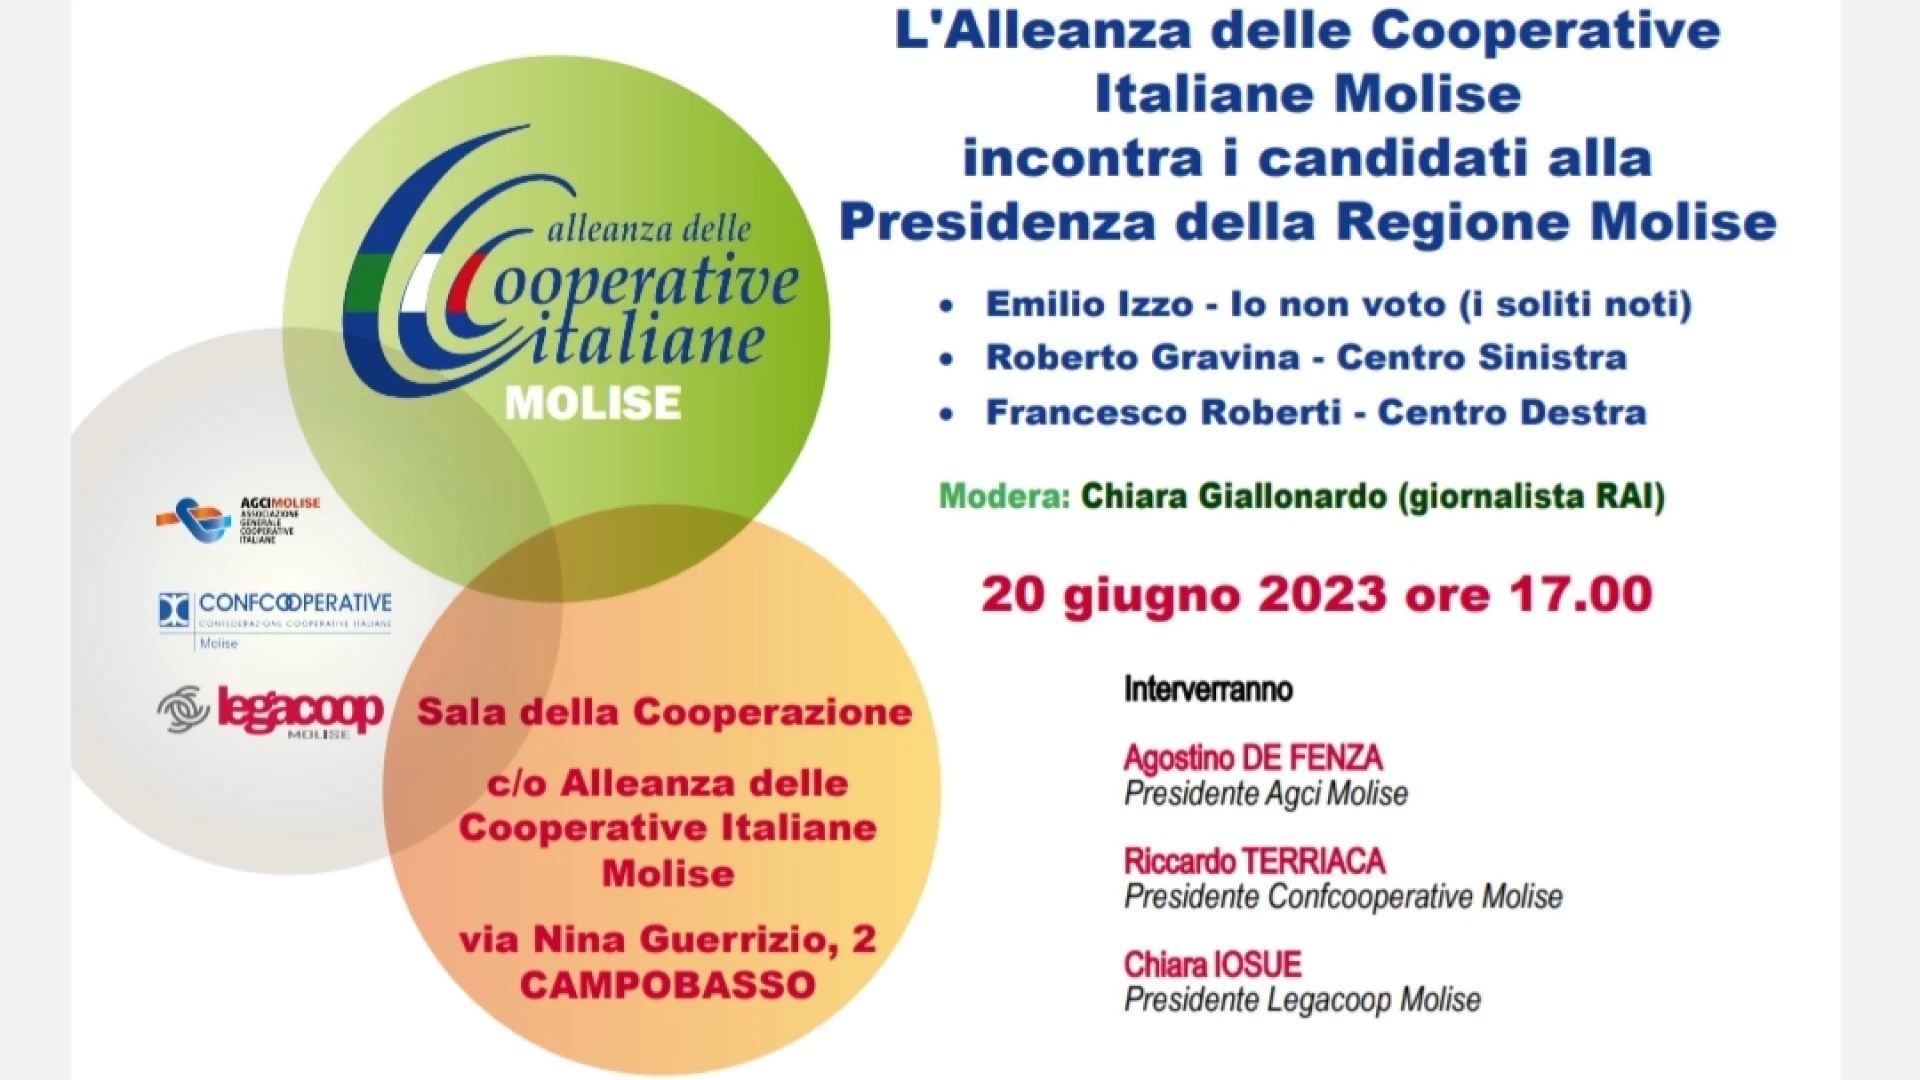 Regionali 2023: a Campobasso nel pomeriggio il confronto promosso dall'Alleanza delle Cooperative Italiane